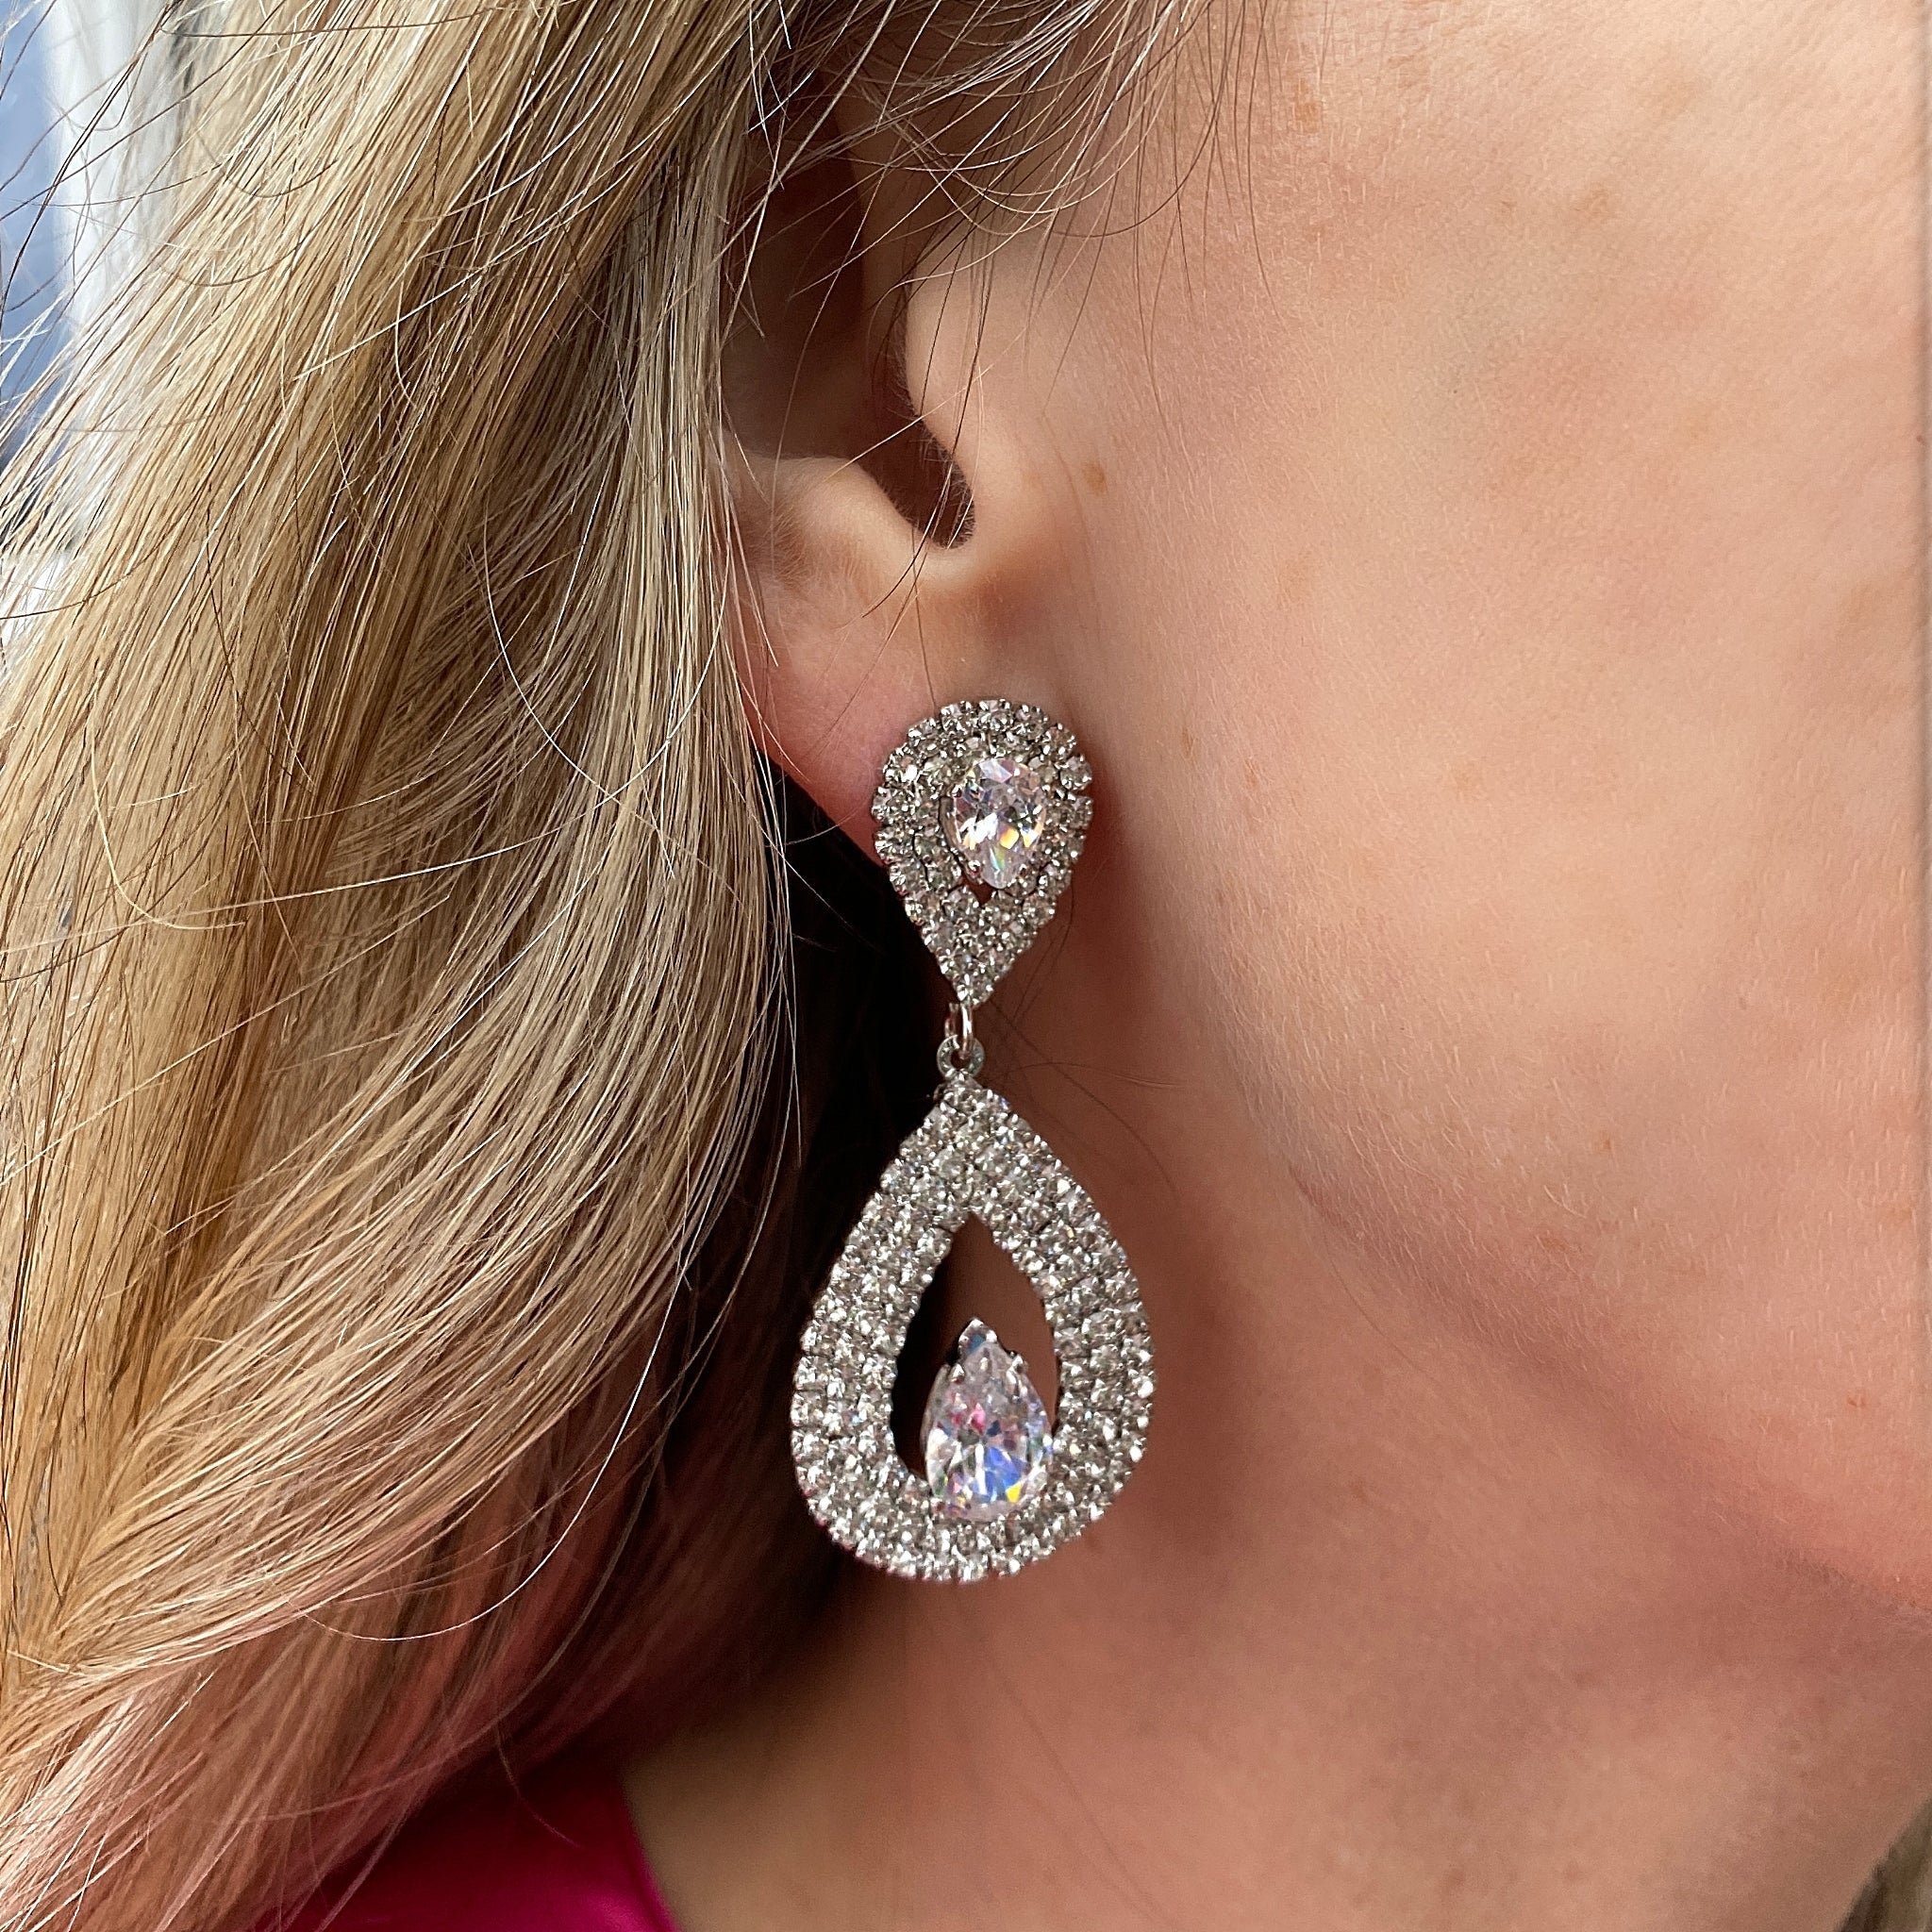 QueenMee Statement Earrings Crystal Earrings Teardrop